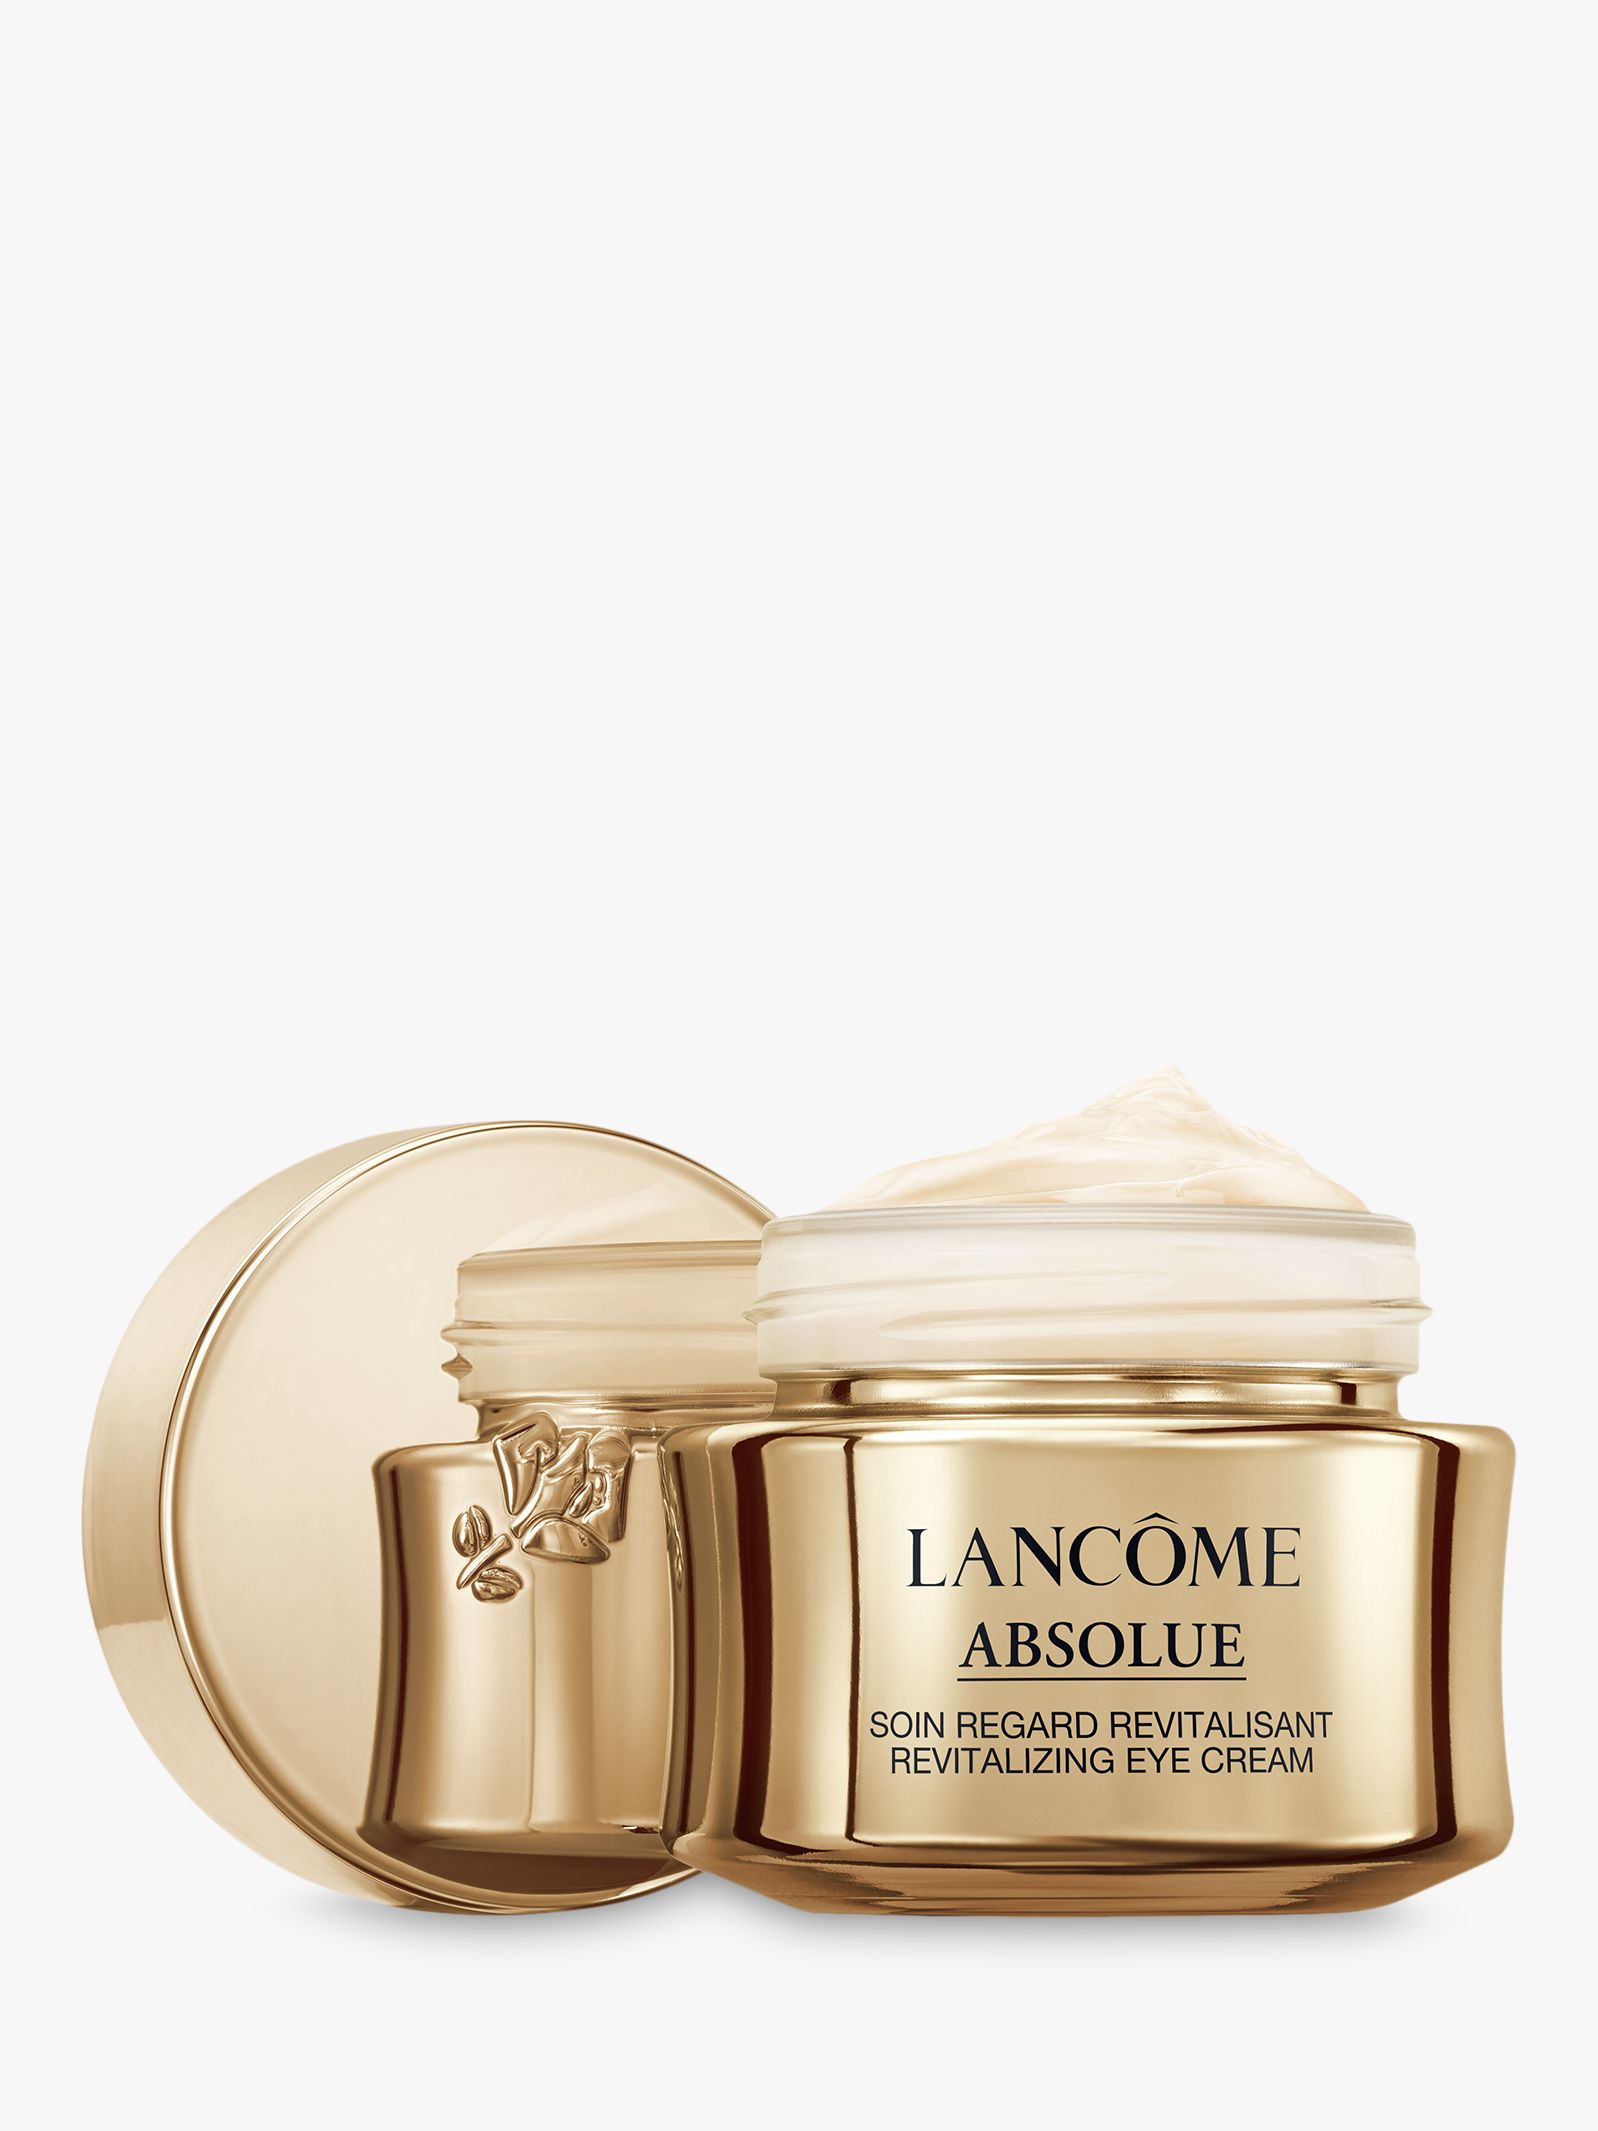 Lancôme Absolue Eye Cream, 20ml at John Lewis & Partners